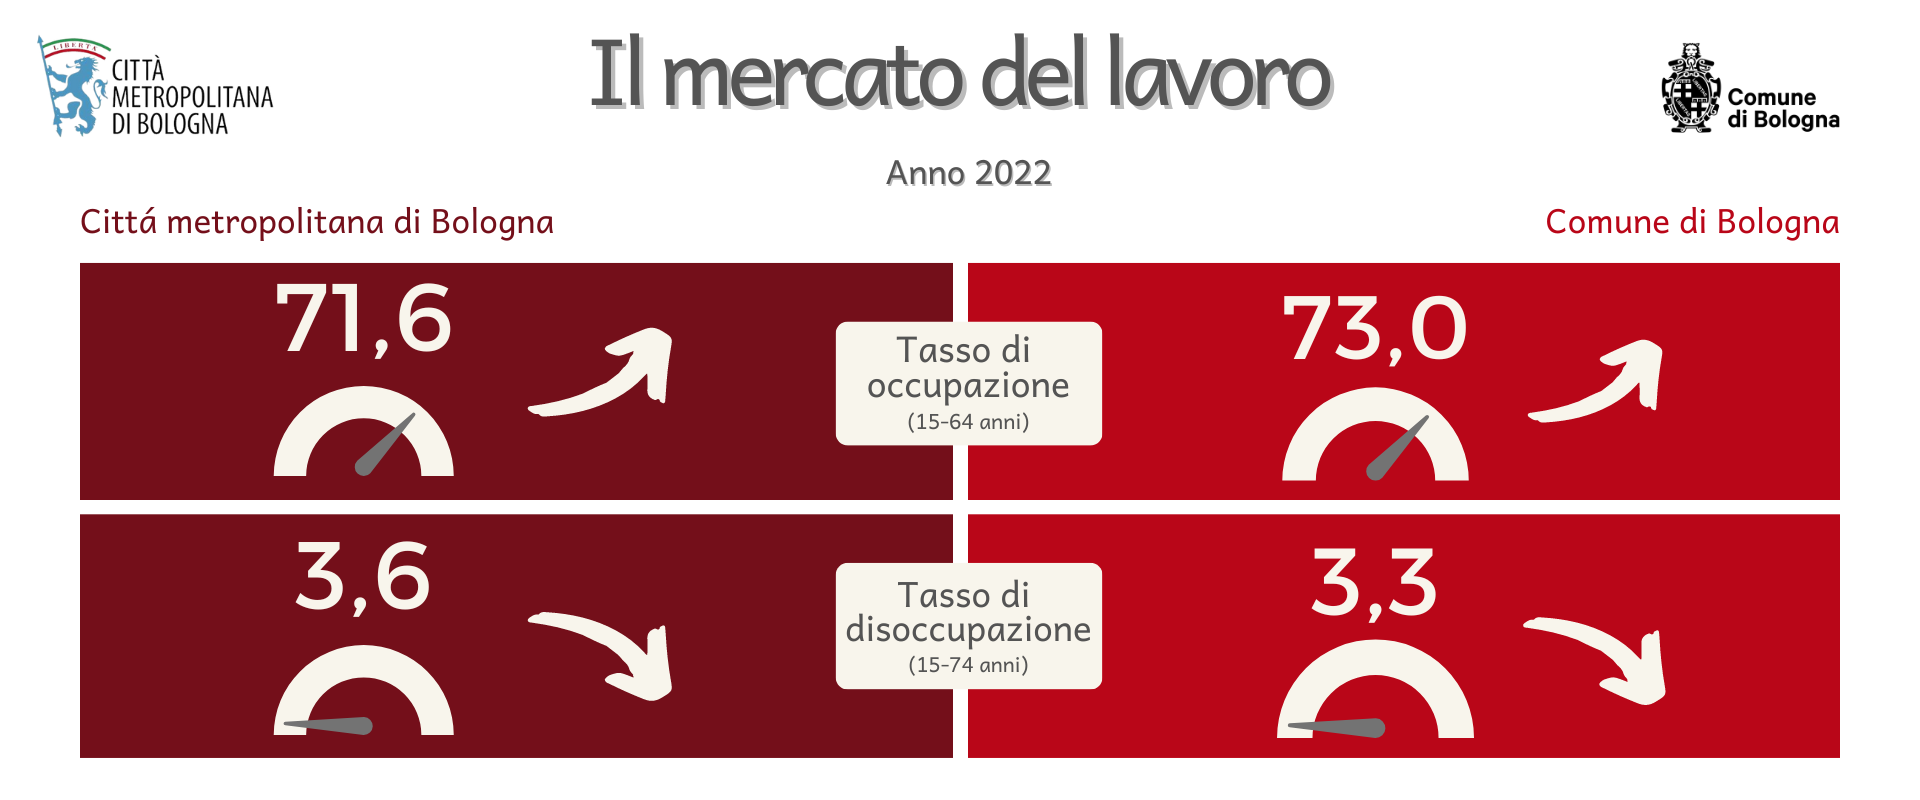 Il mercato del lavoro a Bologna 2022